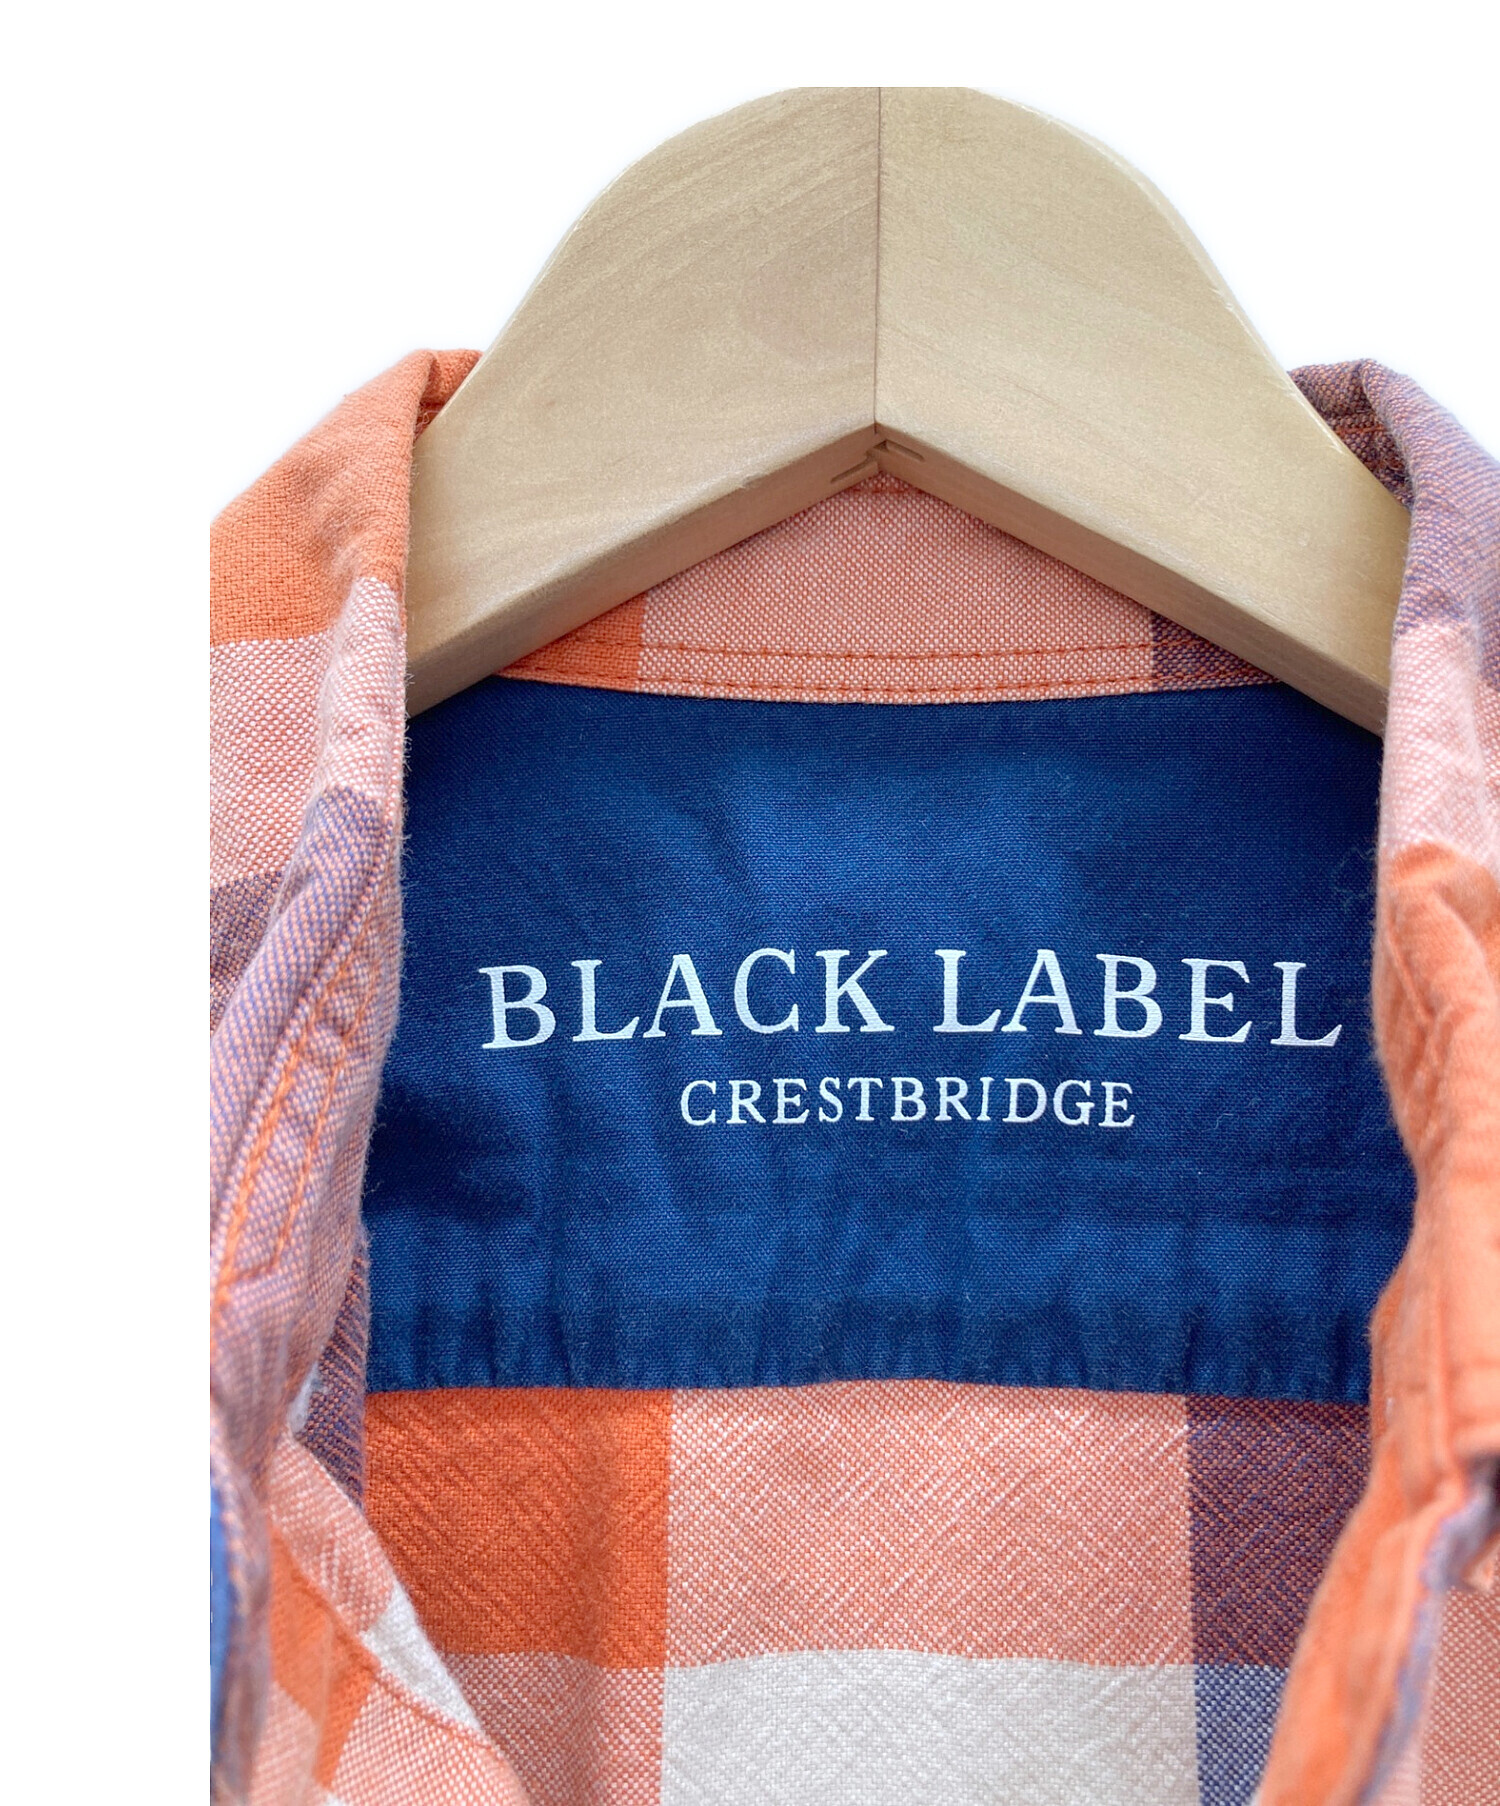 BLACK LABEL CRESTBRIDGE (ブラックレーベル クレストブリッジ) シャツ オレンジ×ネイビー サイズ:M